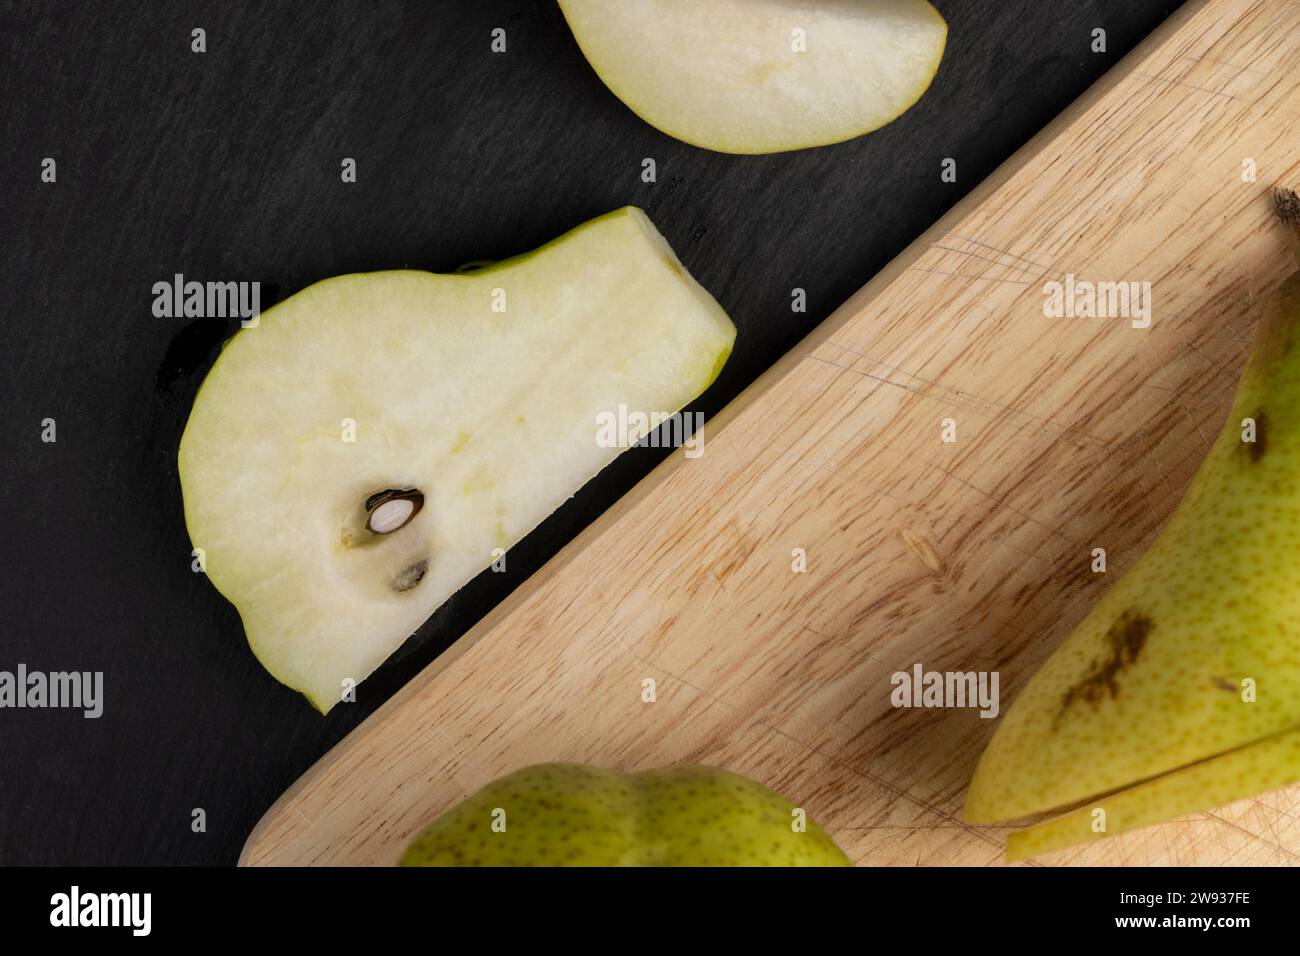 In Scheiben geschnittene reife und saftige grüne Birnen, köstliche Birnen gewaschen und fertig zum Kochen Stockfoto